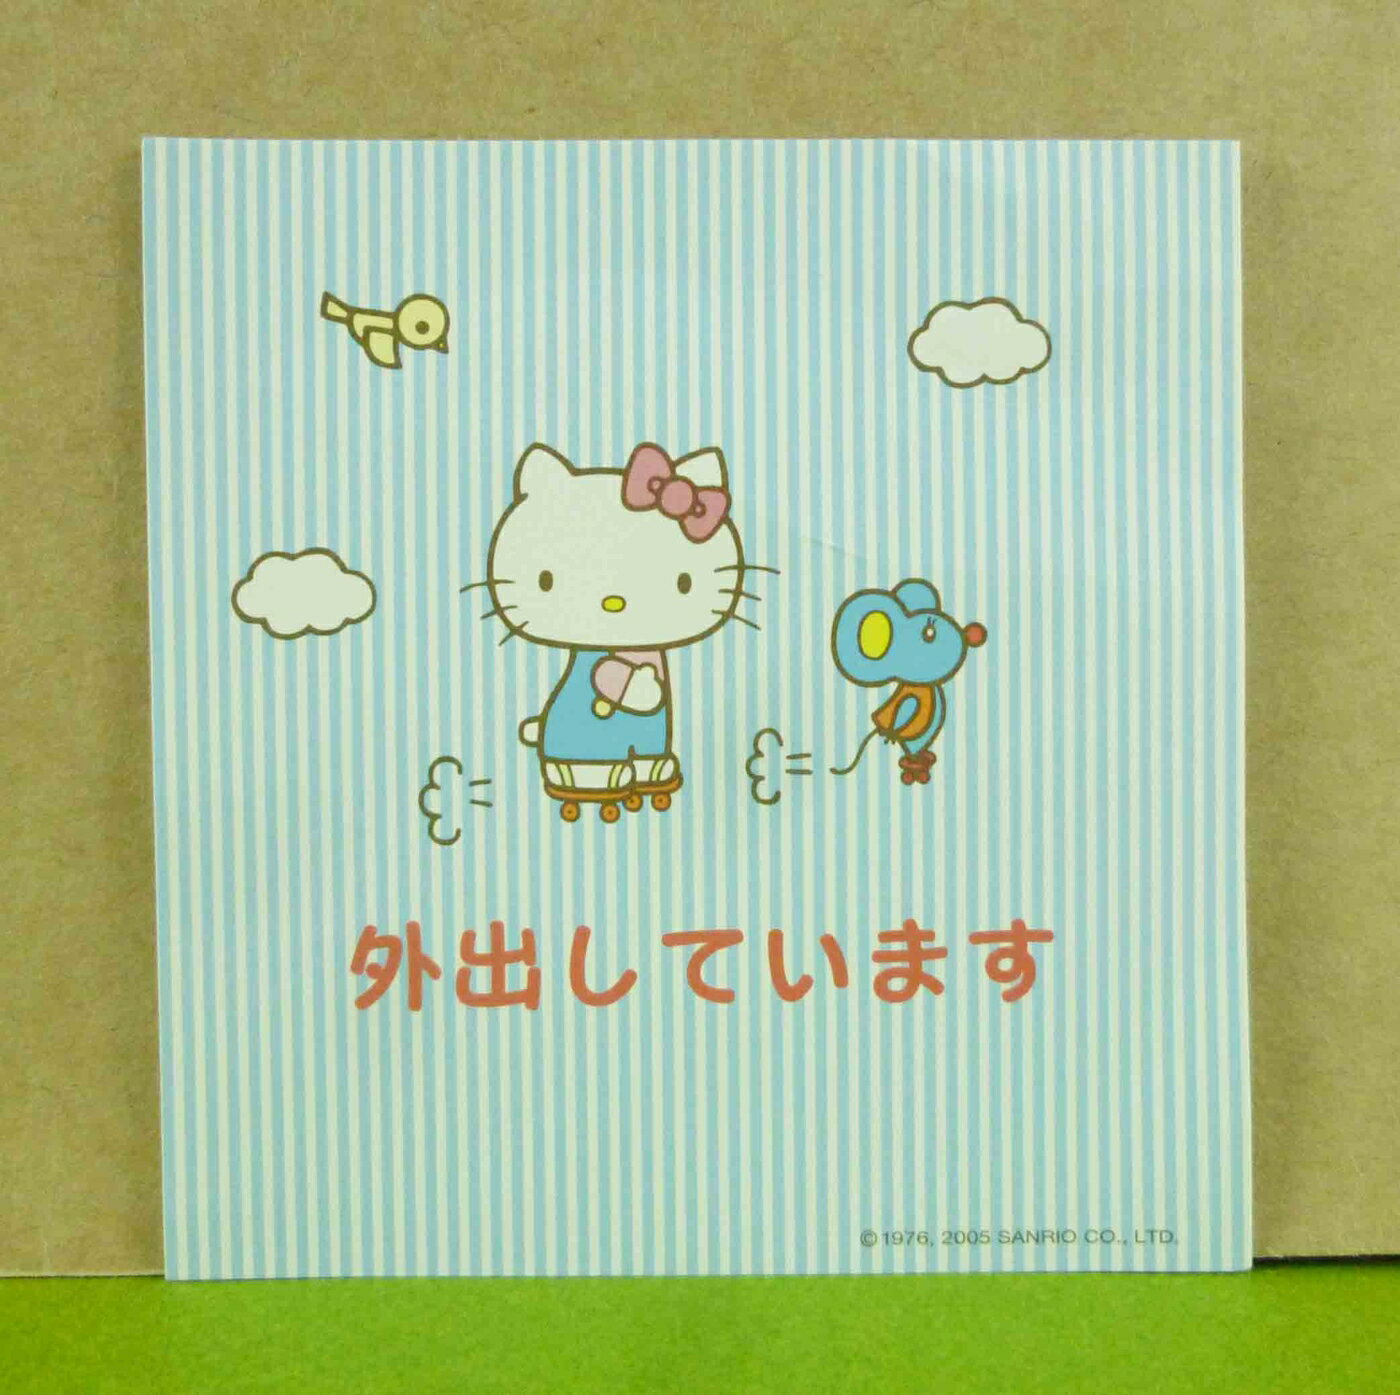 【震撼精品百貨】Hello Kitty 凱蒂貓 造型卡片-藍老鼠(線條) 震撼日式精品百貨